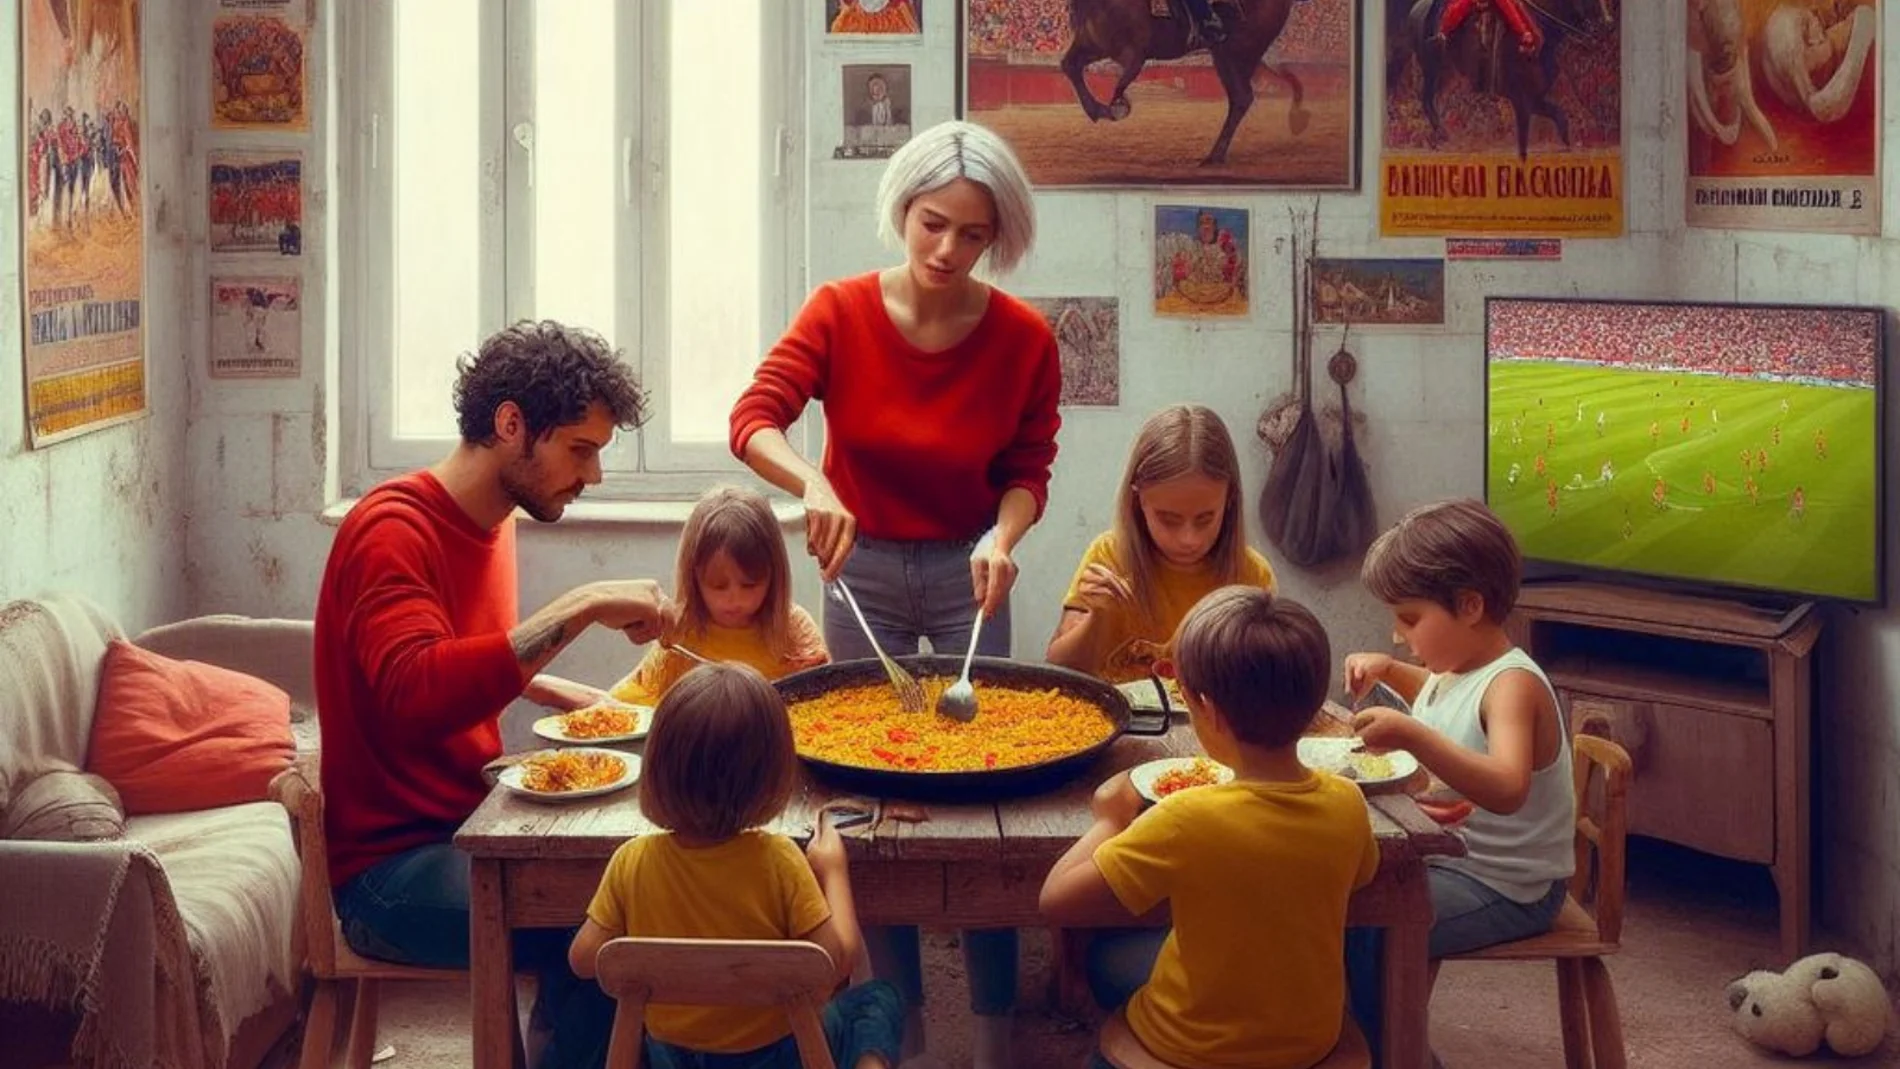 La IA muestra cómo se verían las familias españolas según su clase social